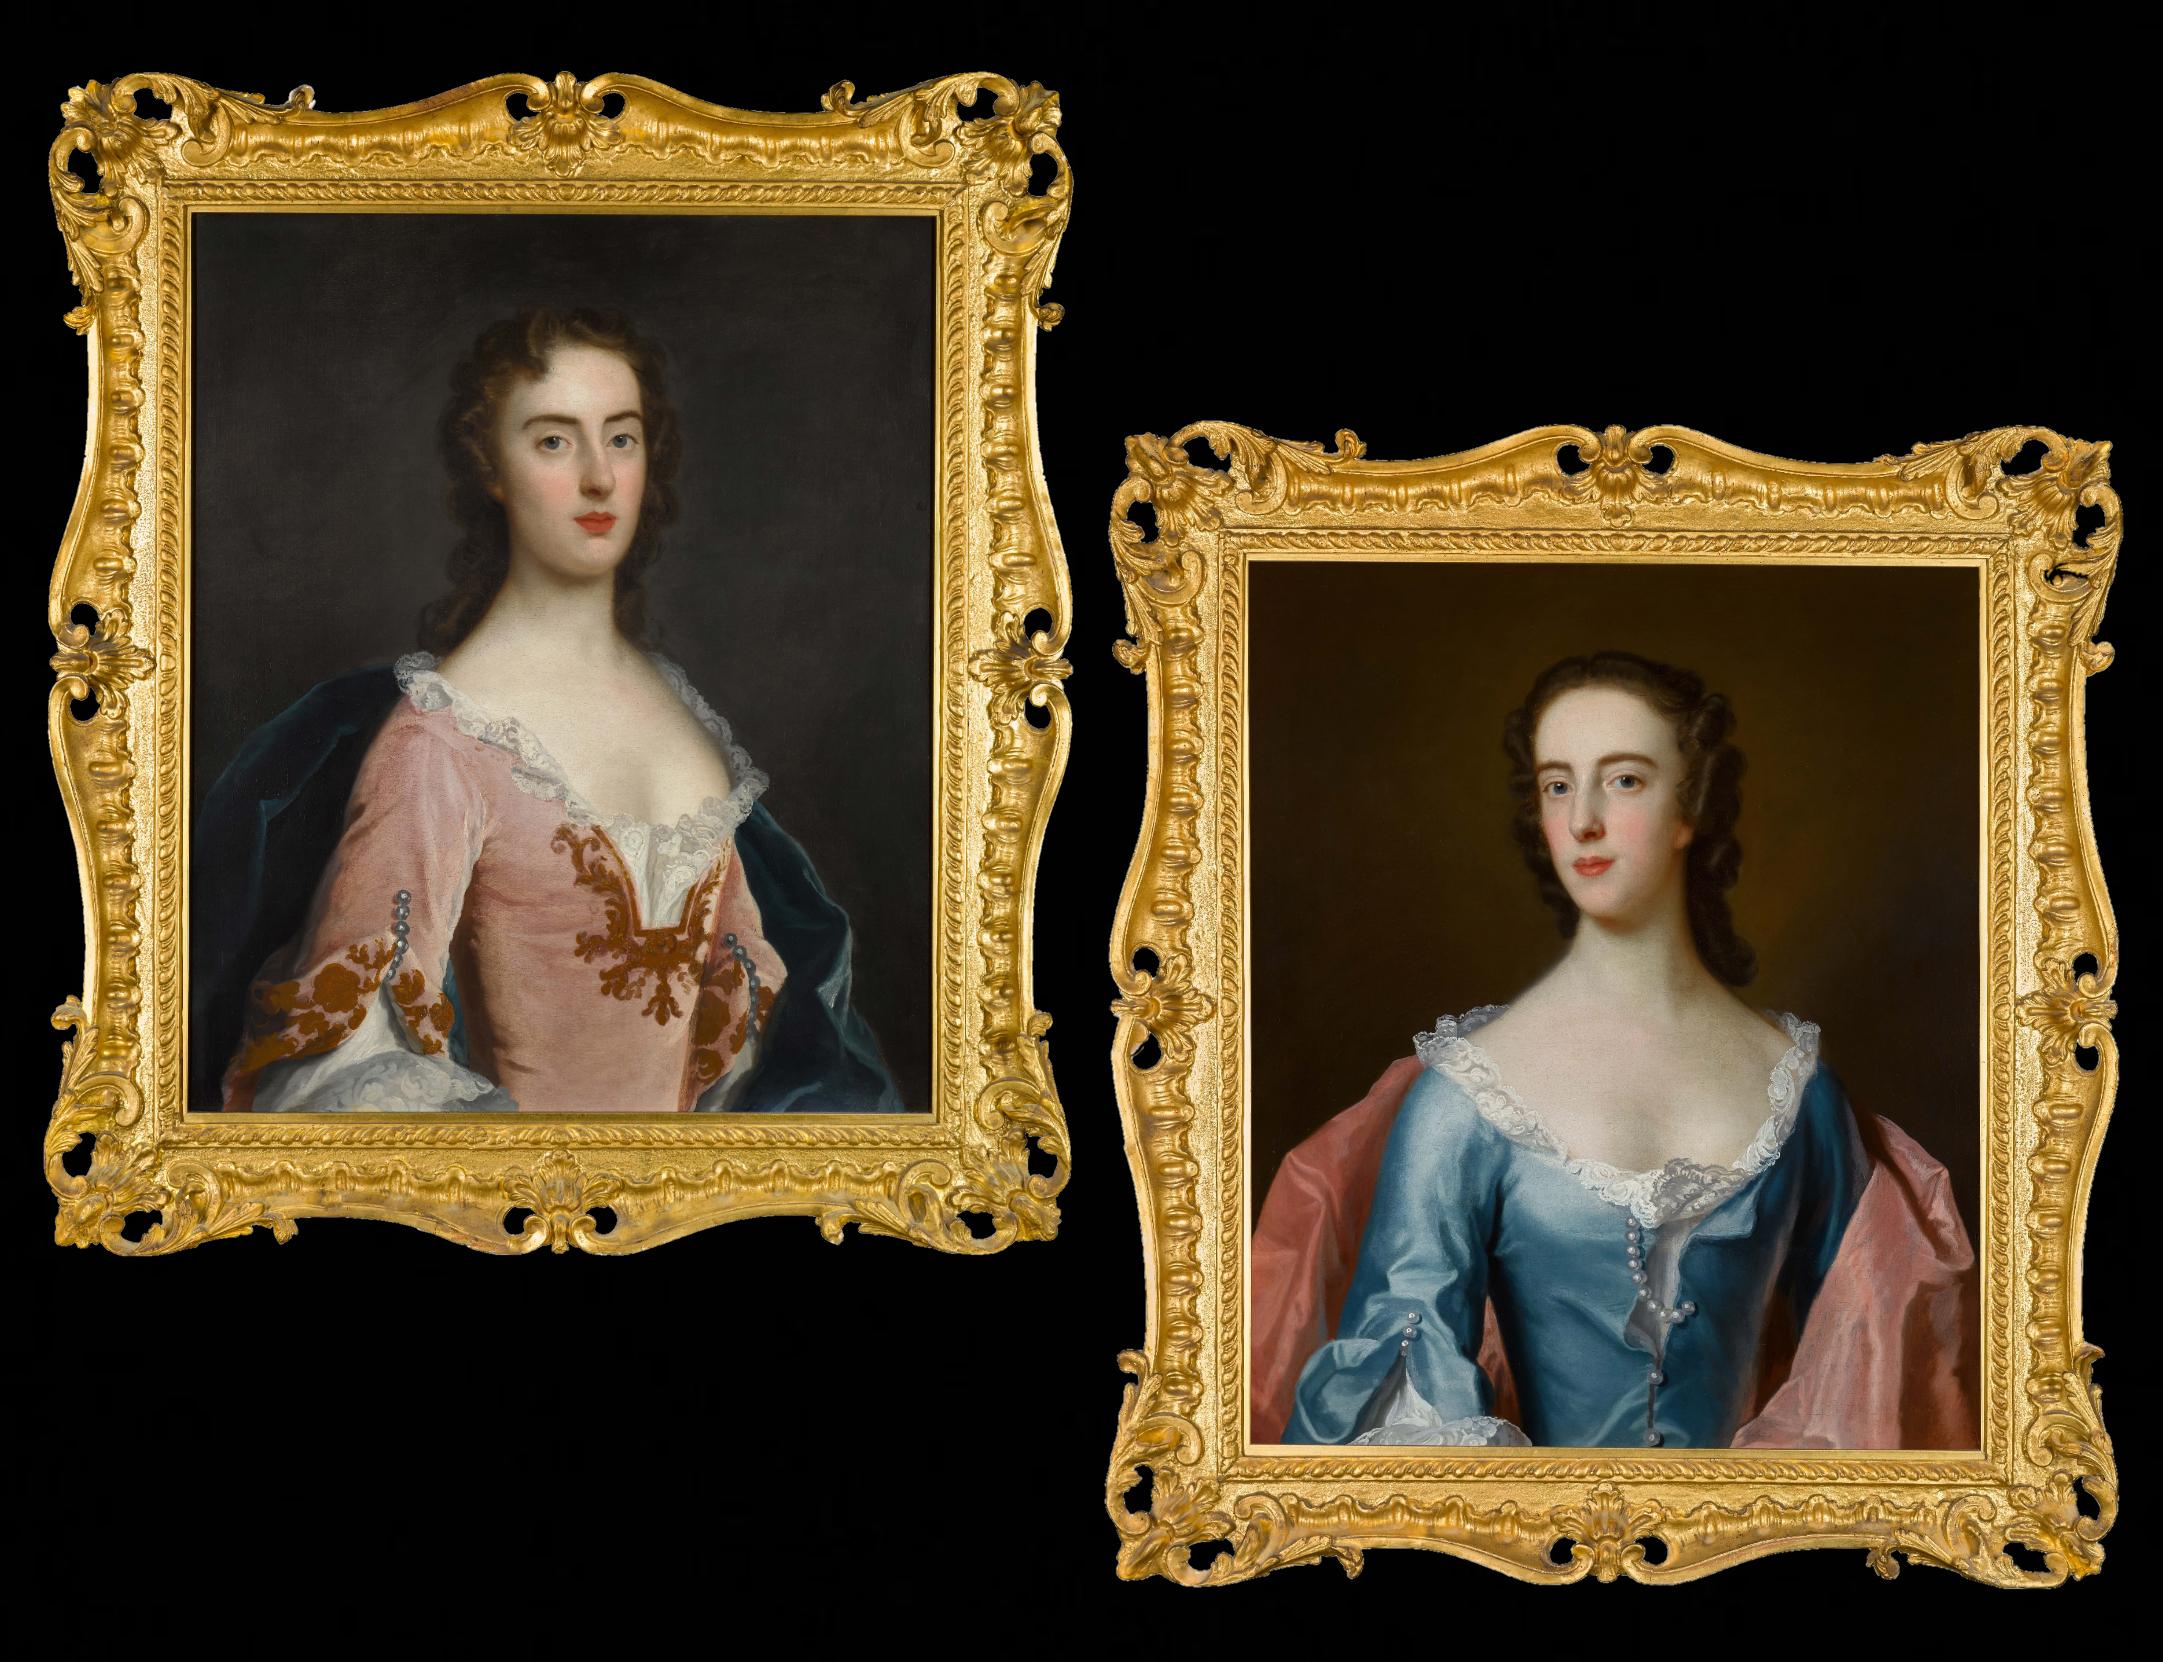 Retratos ingleses de Lady, Dorothy y Jane Wood c.1750, notables marcos tallados